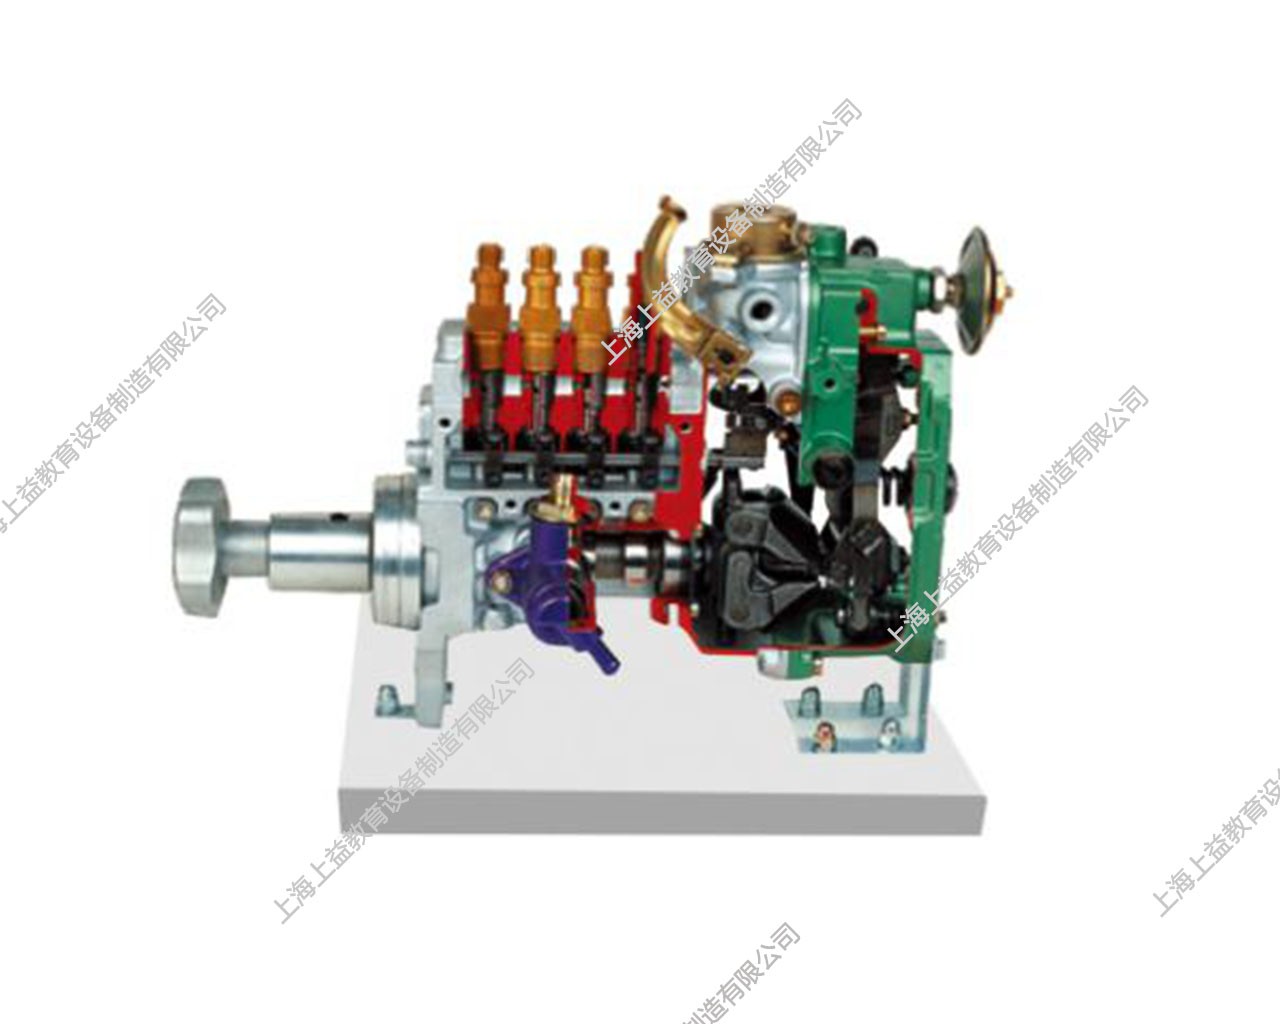 康明斯直列式噴油泵解剖模型(RSV)